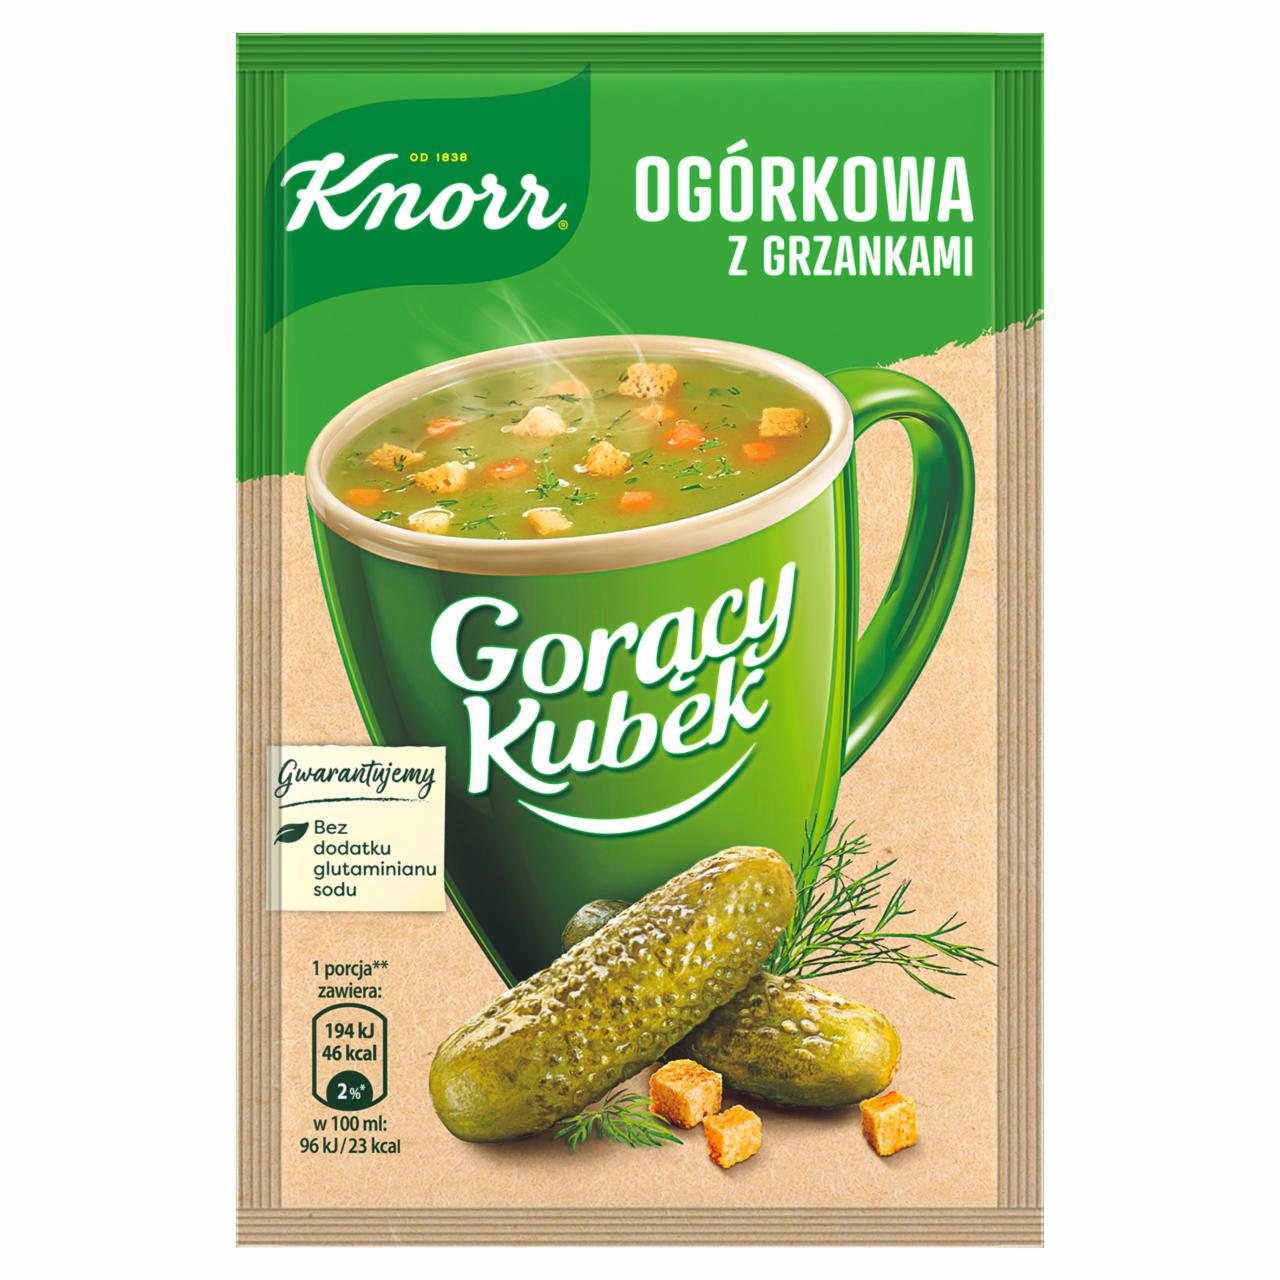 Zdjęcia - Knorr Gorący Kubek Ogórkowa z grzankami 13 g